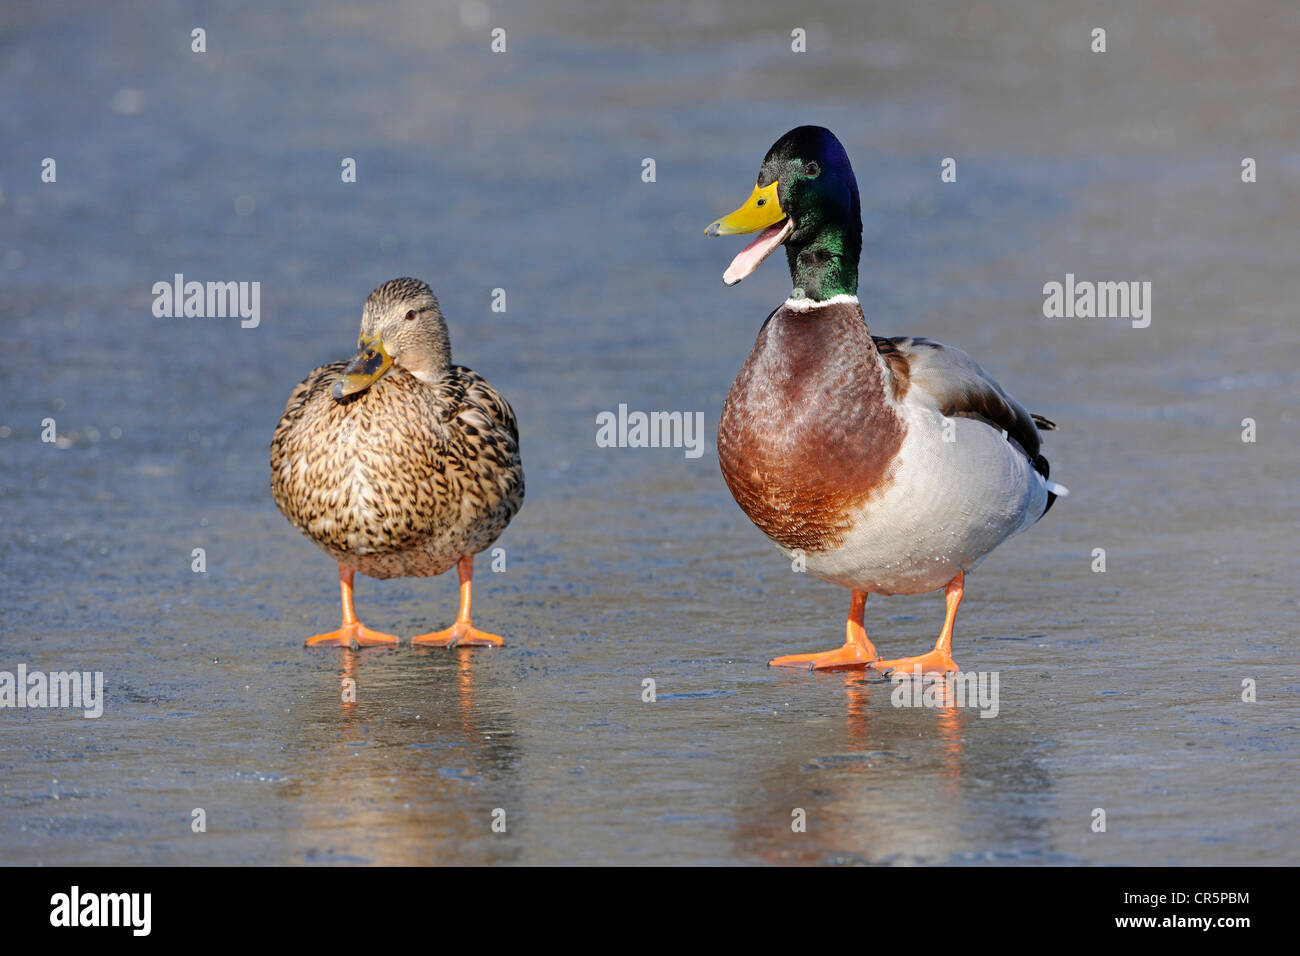 Les Canards colverts (Anas platyrhynchos), hommes et femmes debout sur un lac gelé, le mâle a le bec grand ouvert et appelle Banque D'Images